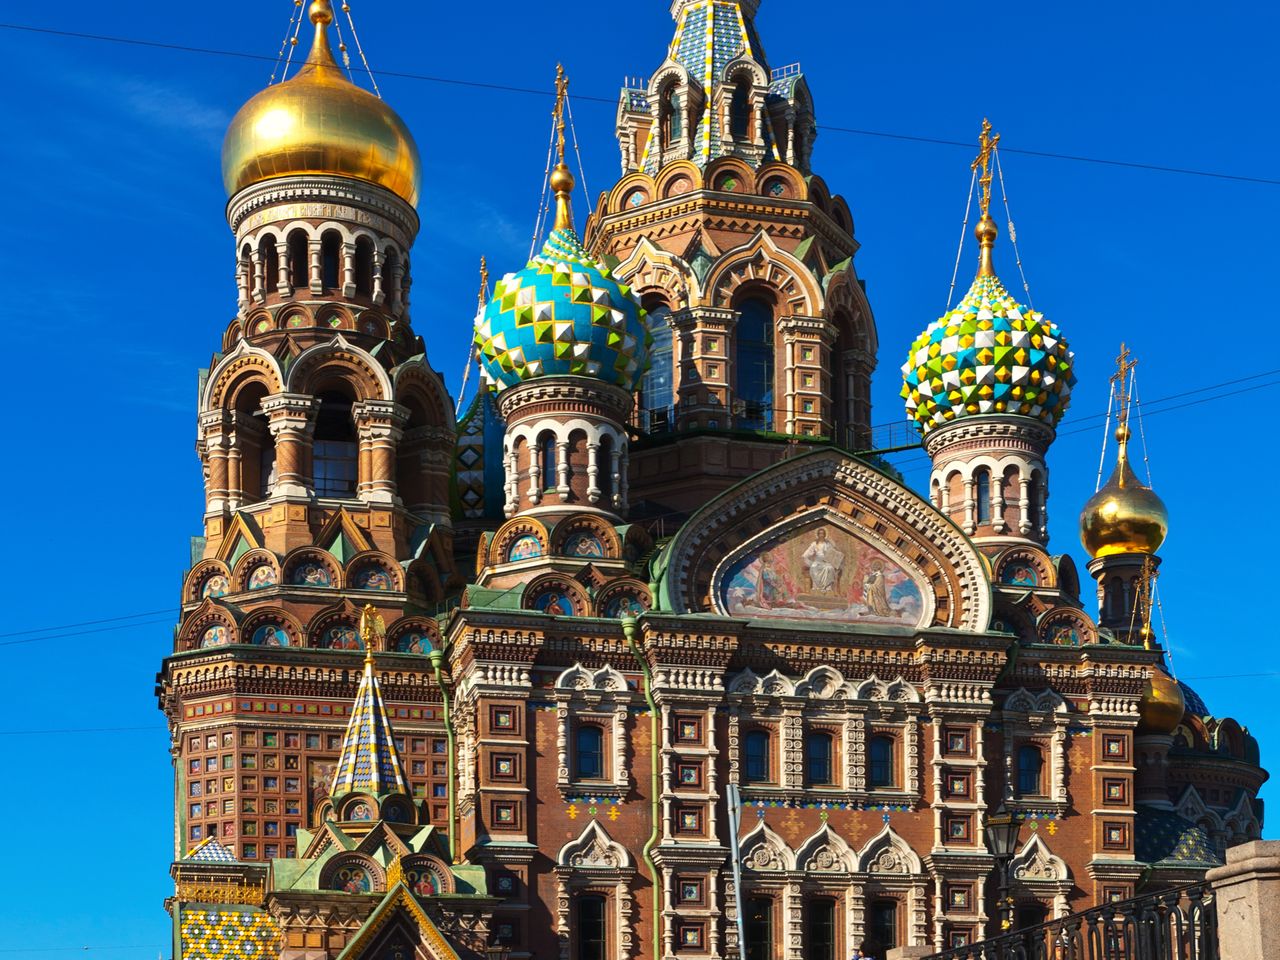 Обзорная автобусная экскурсия по Санкт-Петербургу | Цена 800₽, отзывы, описание экскурсии